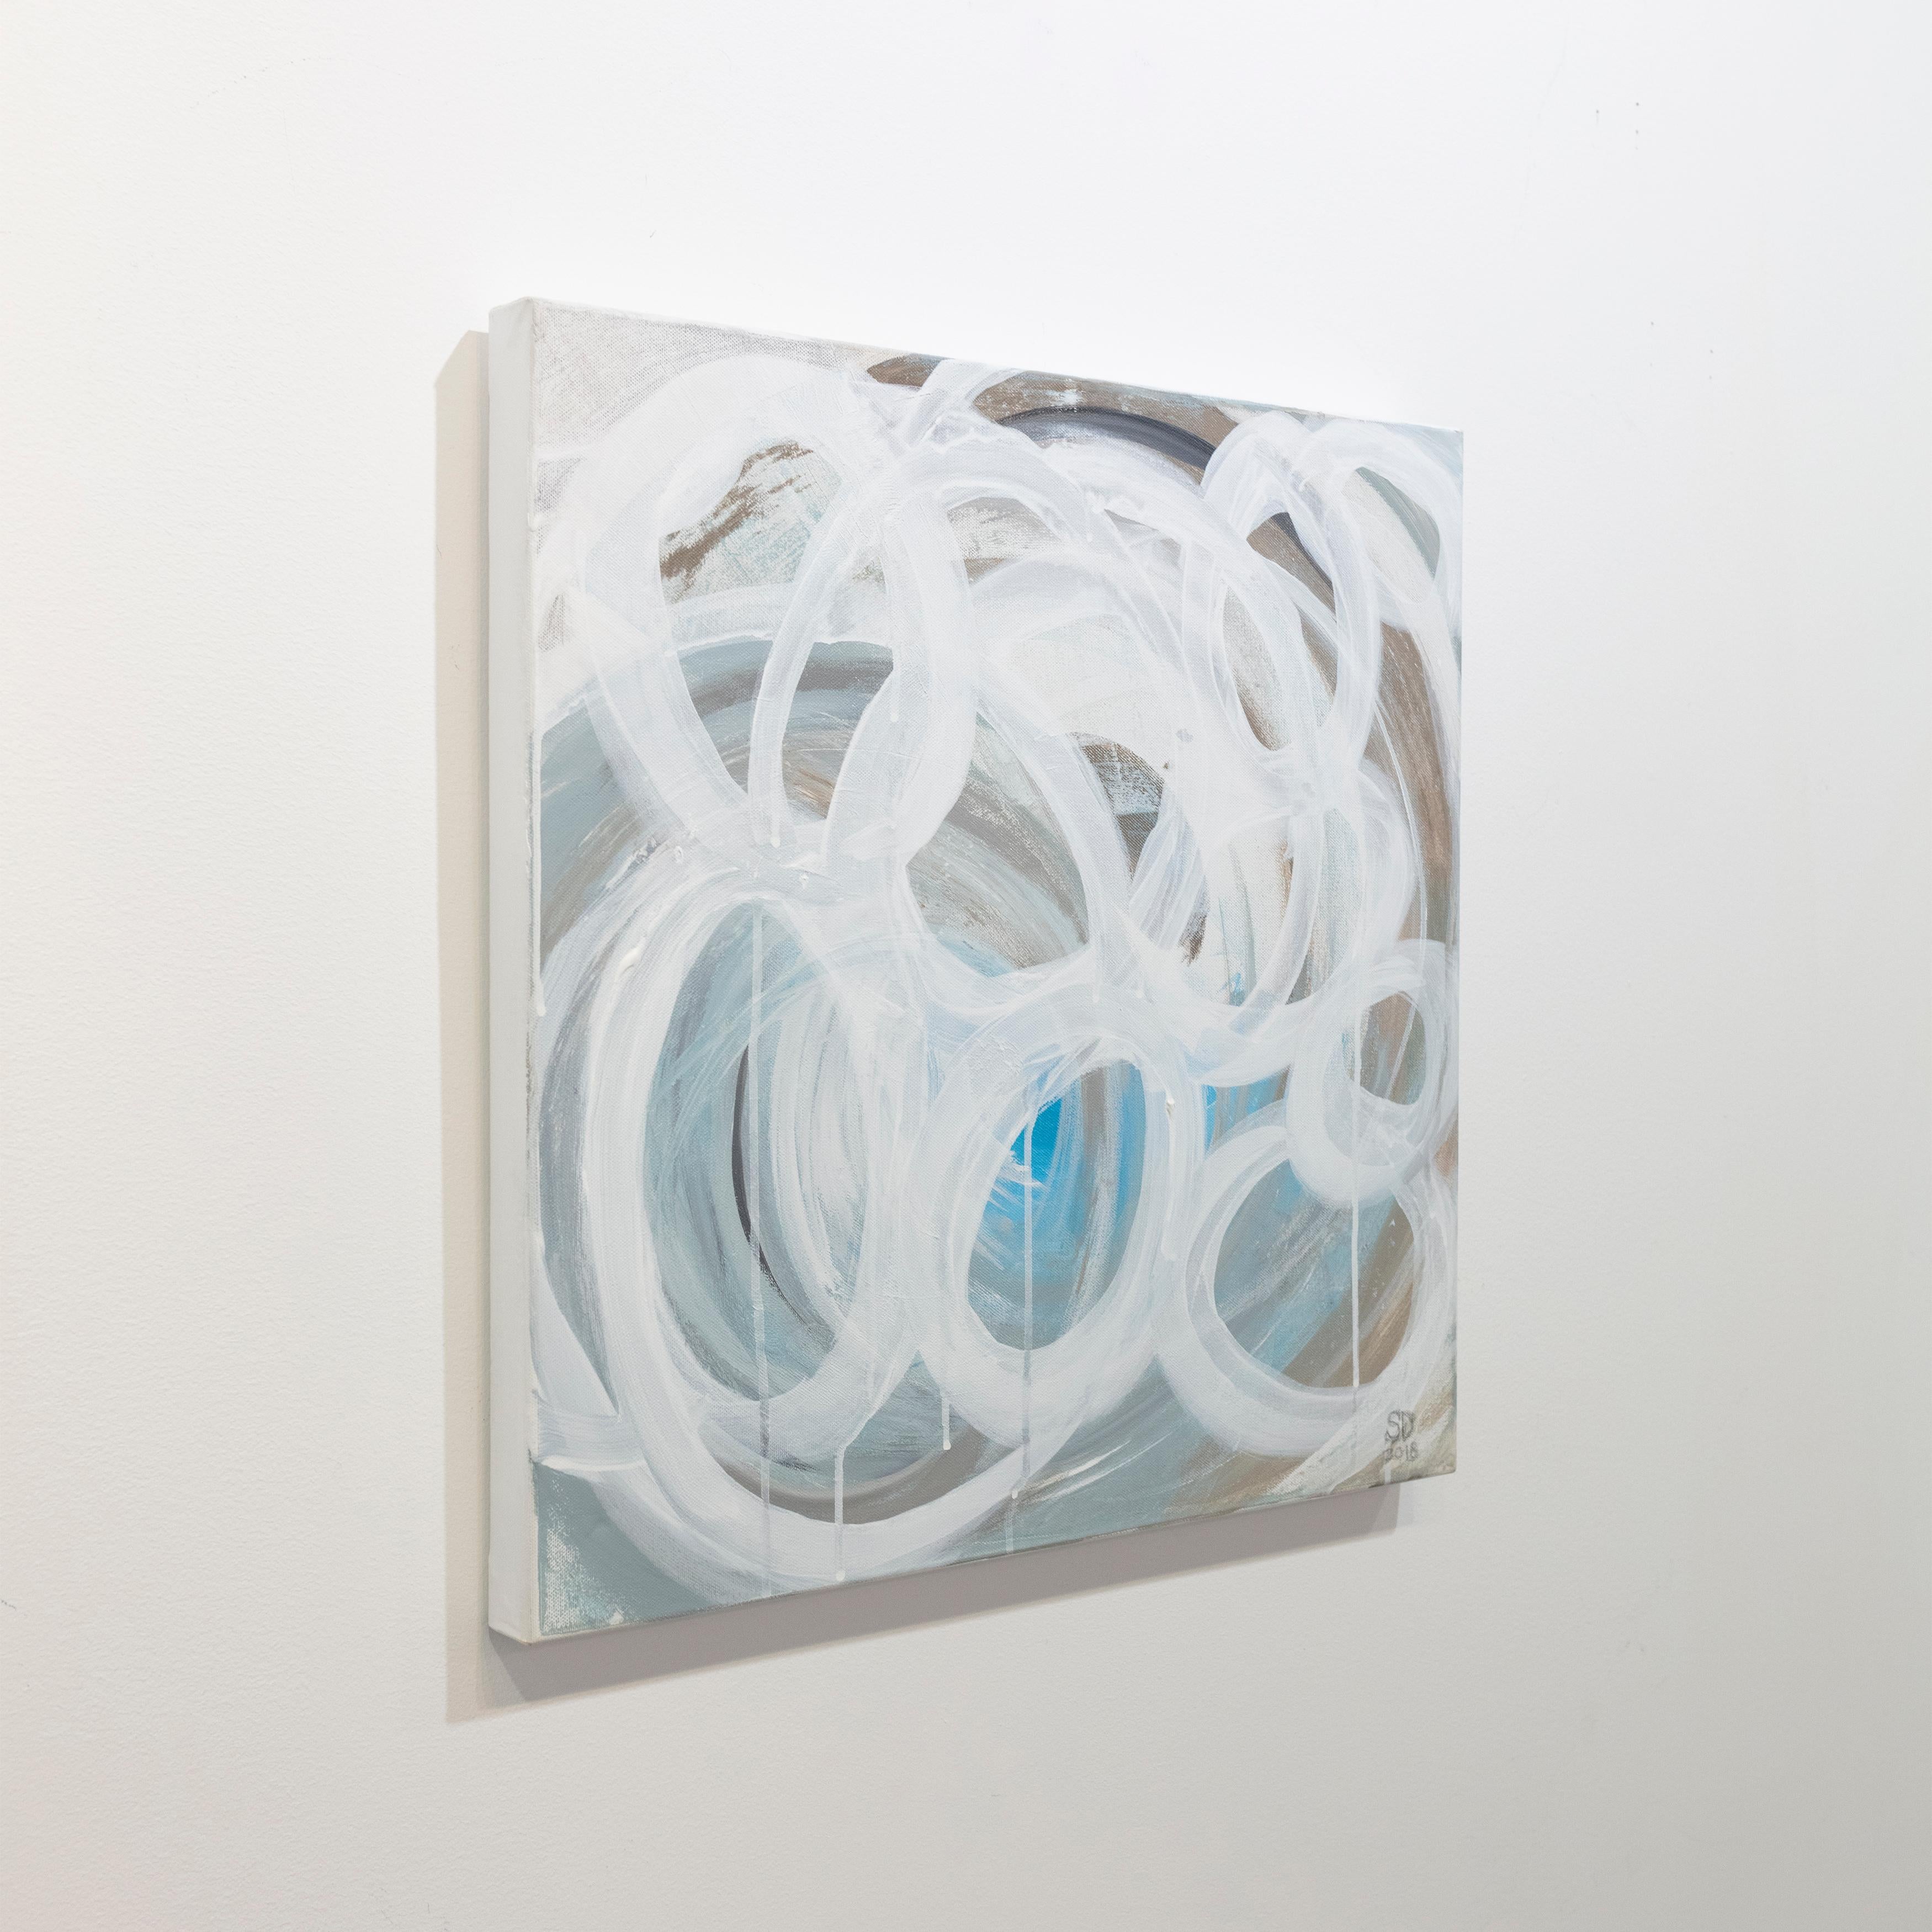 Dieses abstrakte Gemälde von Sue De Chiara ist mit Acrylfarbe auf Leinwand gemalt. Es zeichnet sich durch eine hellblau-graue Palette aus, auf der weiße Kreisformen in leichten, lockeren Strichen über die Komposition verteilt sind. Das Gemälde hat